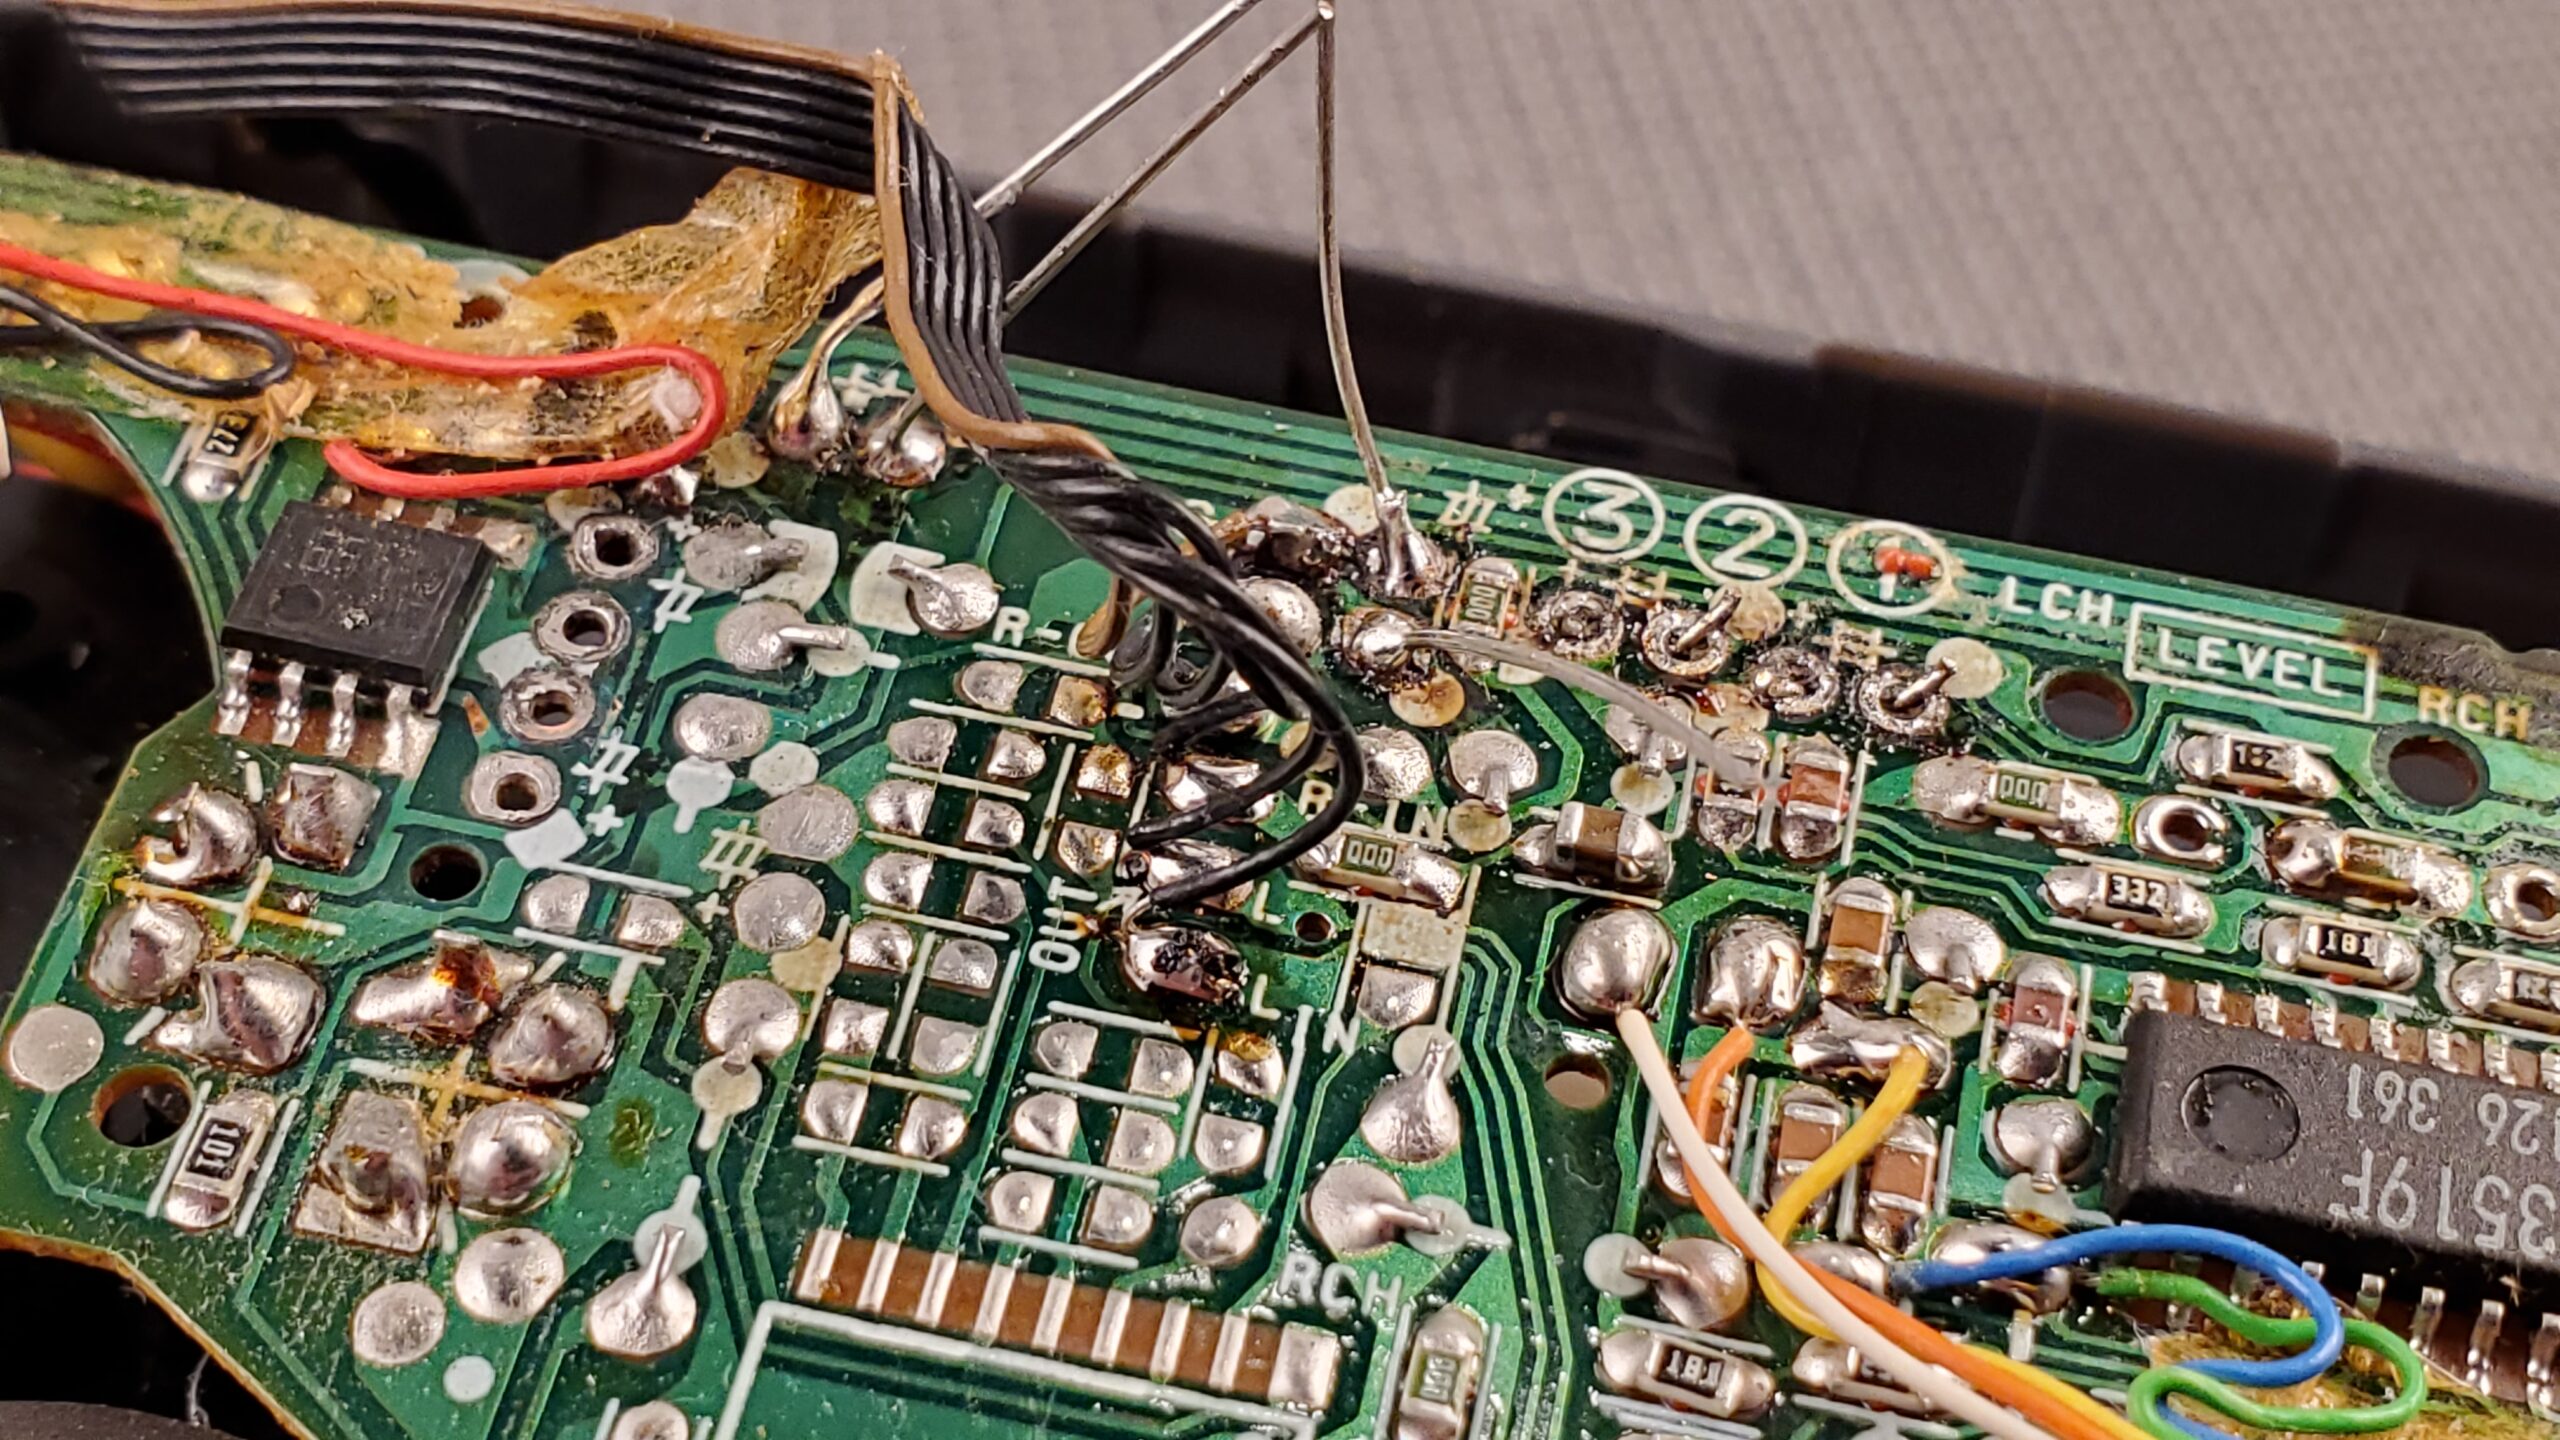 Aiwa GS110 Walkman Main Board with bad capacitors